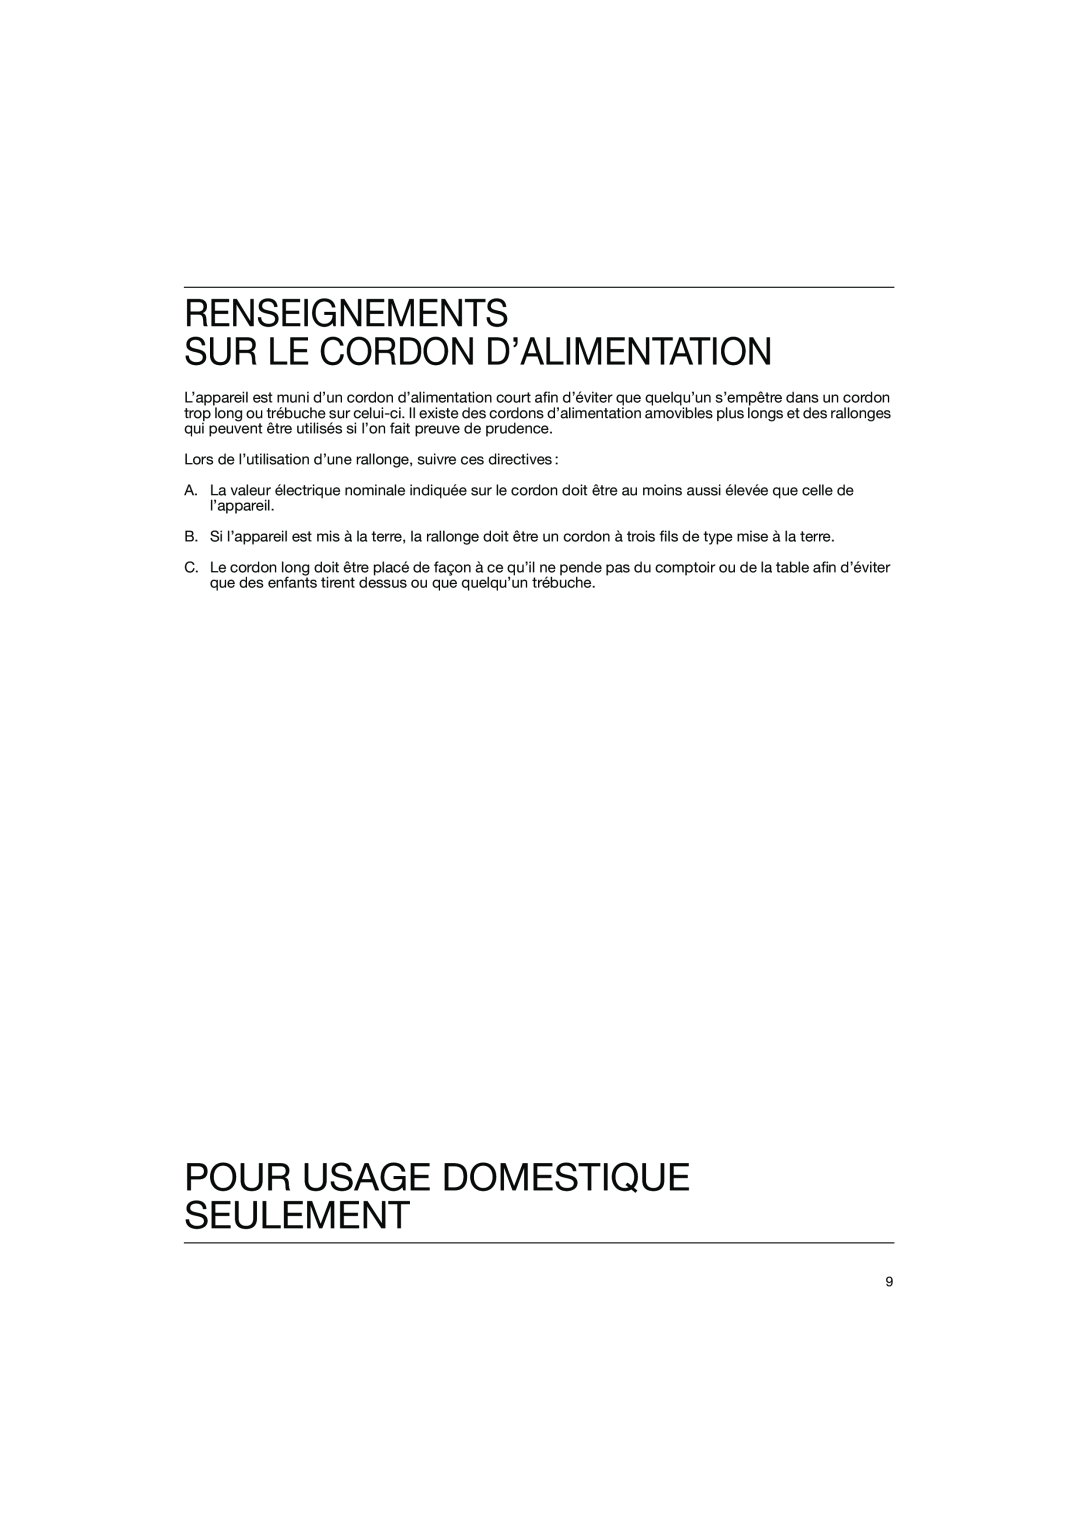 Braun WK 600 manual Renseignements Sur Le Cordon D’Alimentation, Pour Usage Domestique Seulement 